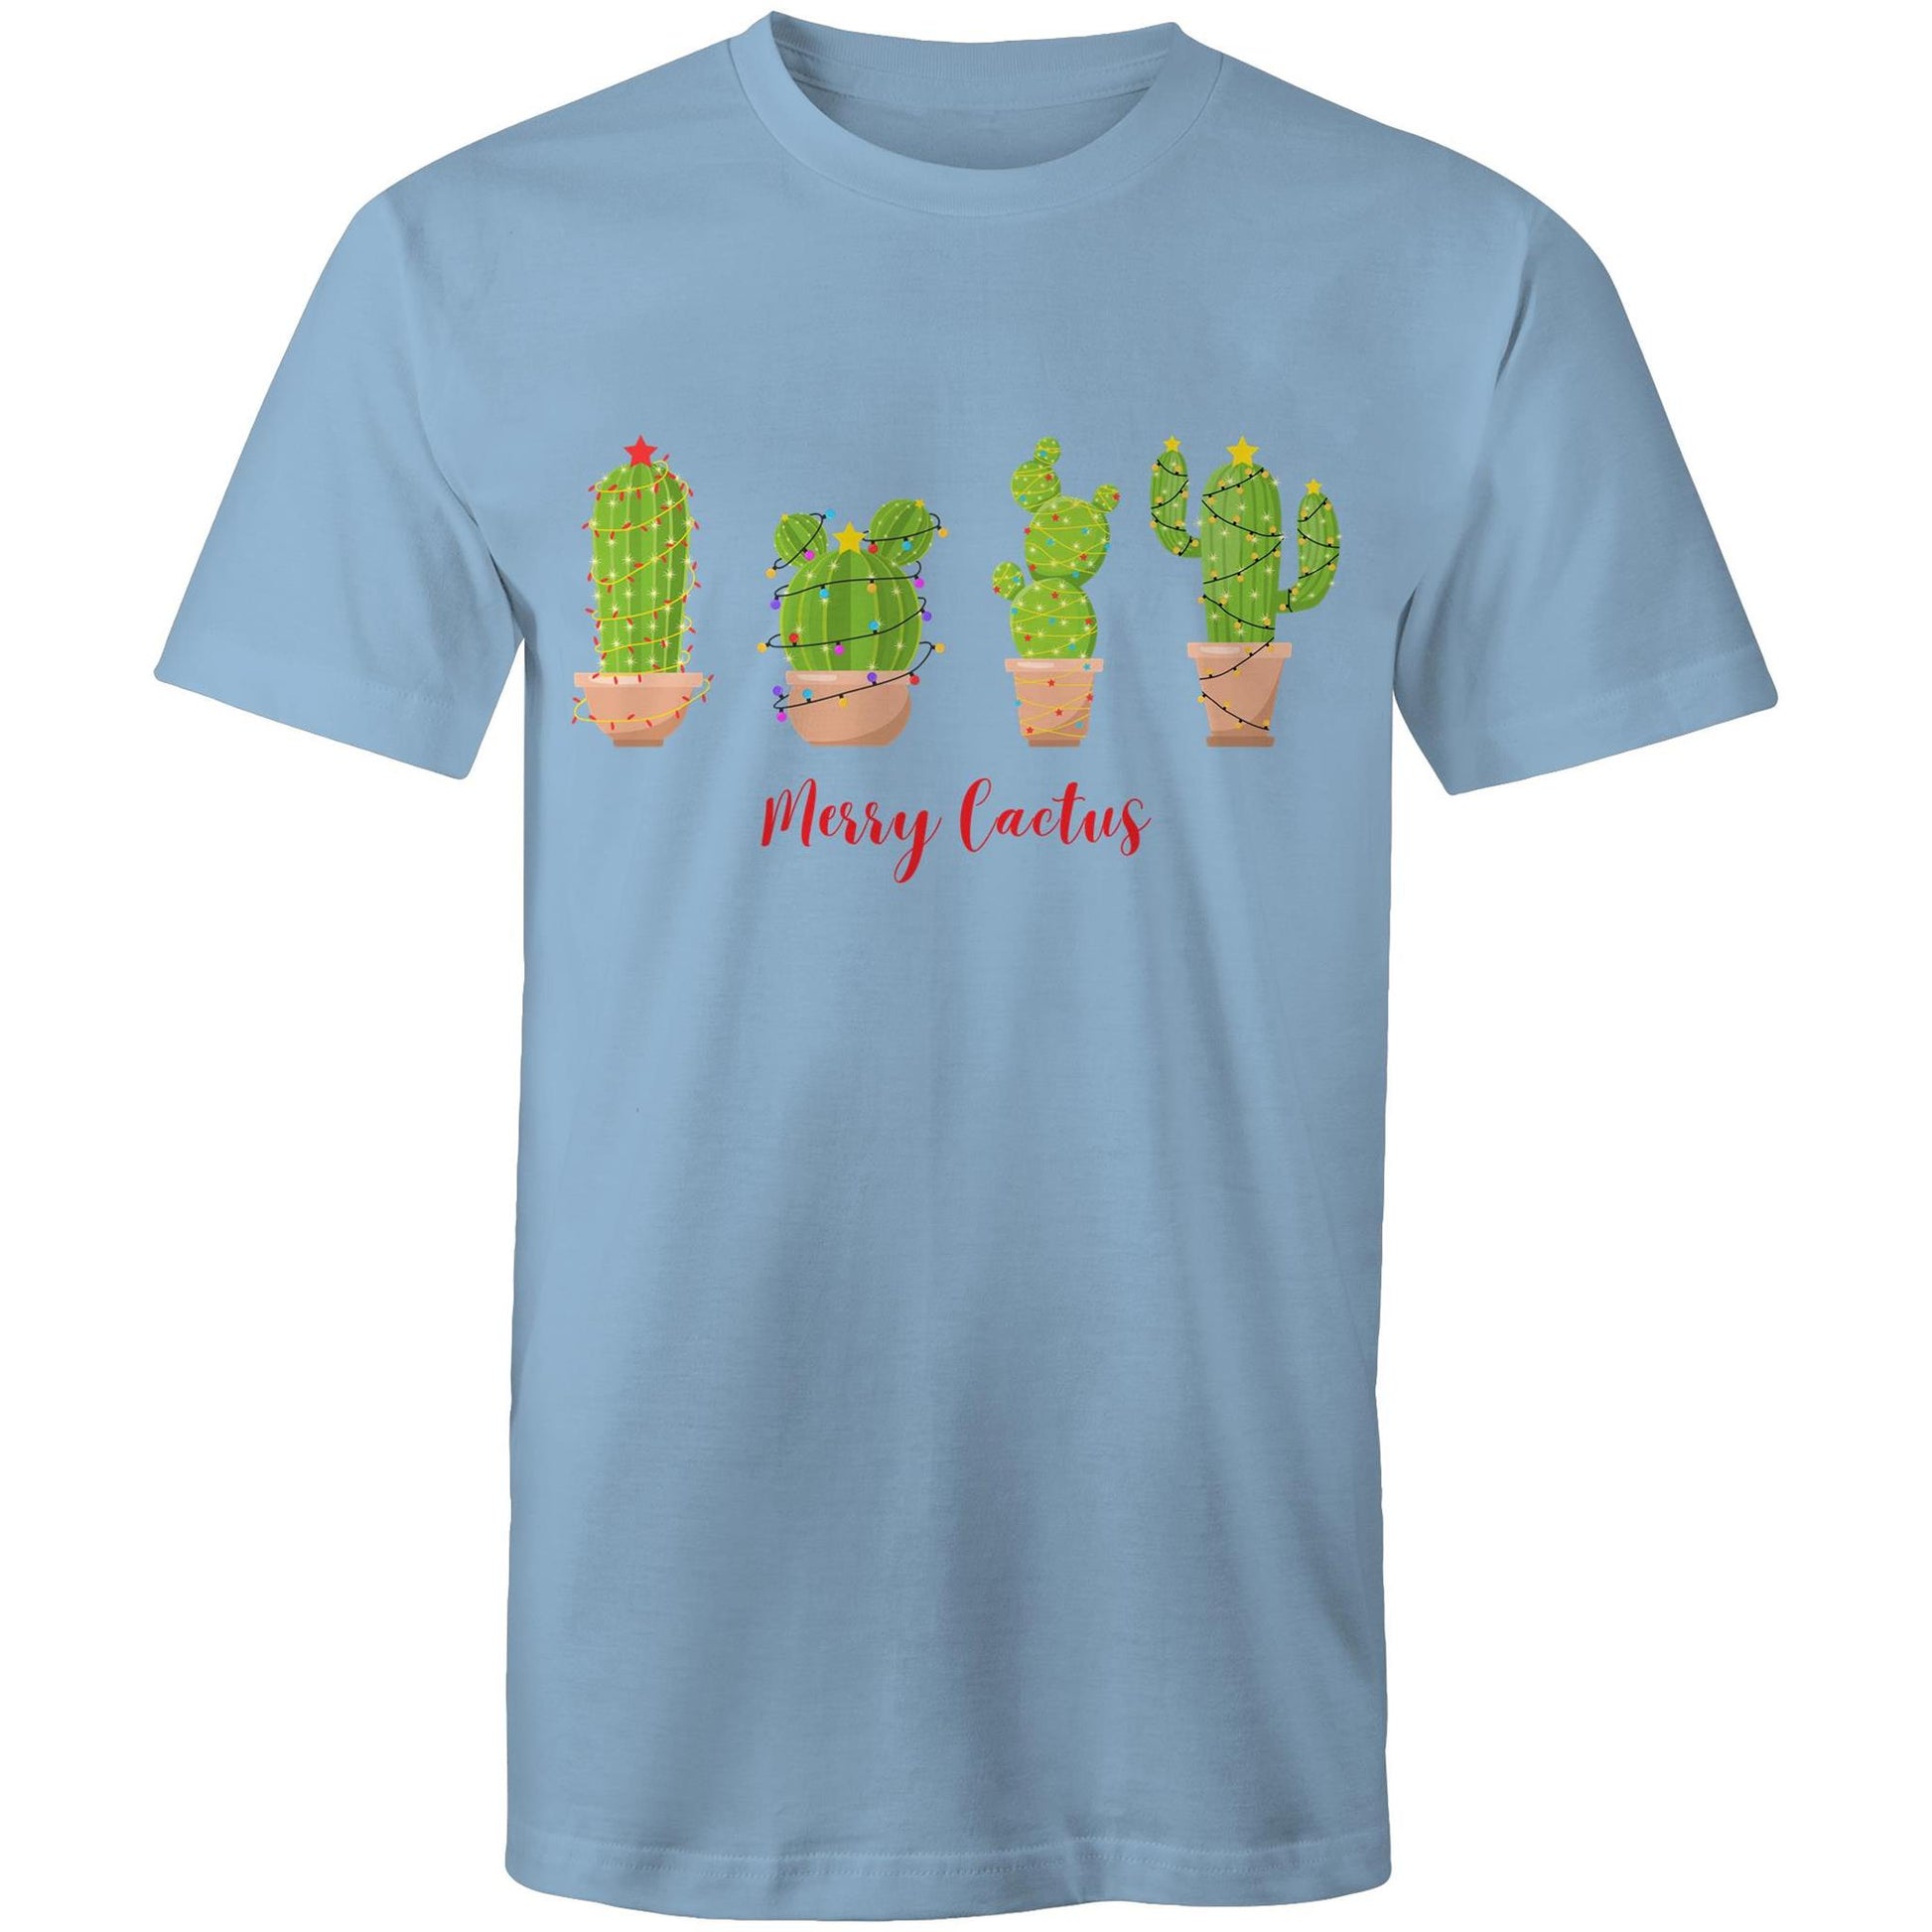 Merry Cactus - Mens T-Shirt Carolina Blue Christmas Mens T-shirt Merry Christmas